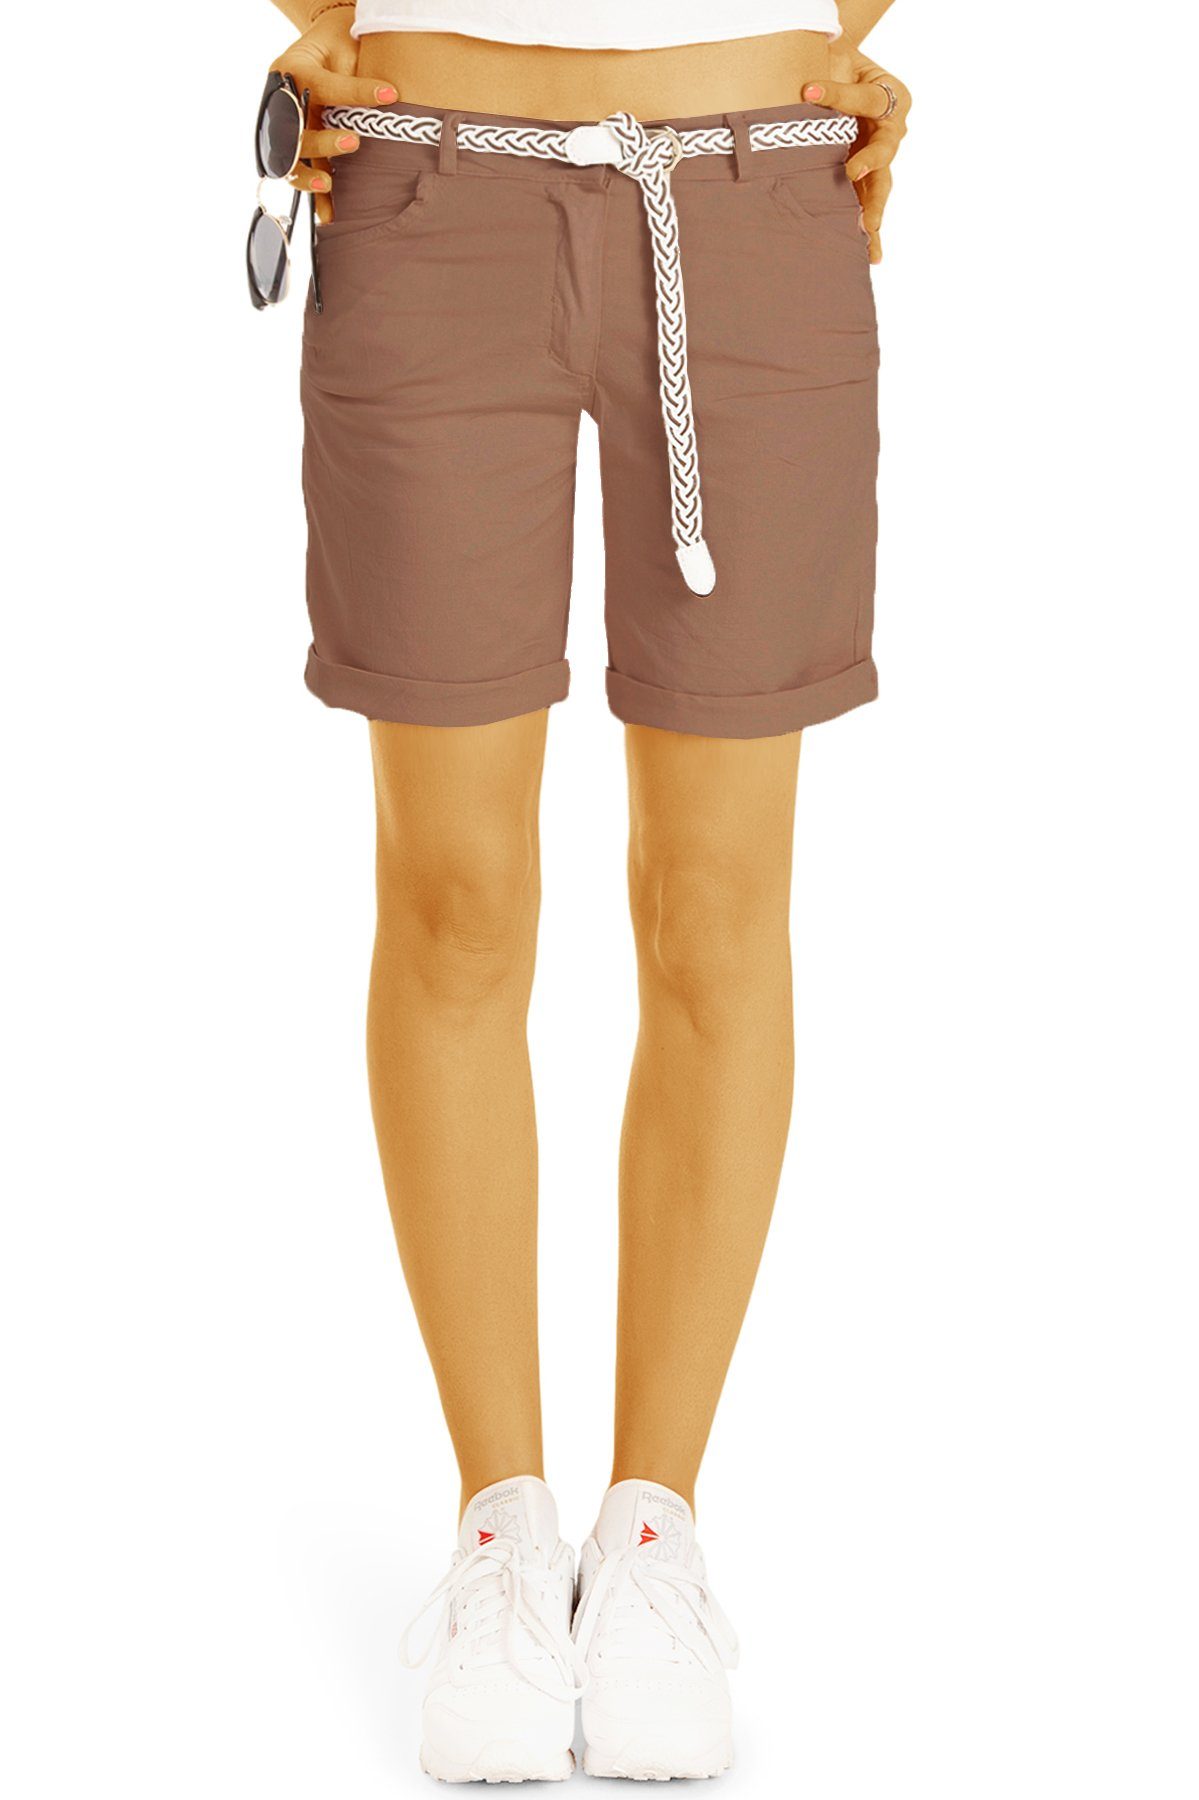 be styled Shorts Chino Stoff Shorts - Kurze lockere Hosen mit Gürtel - Damen - h23a in Unifarben, mit Gürtel braun